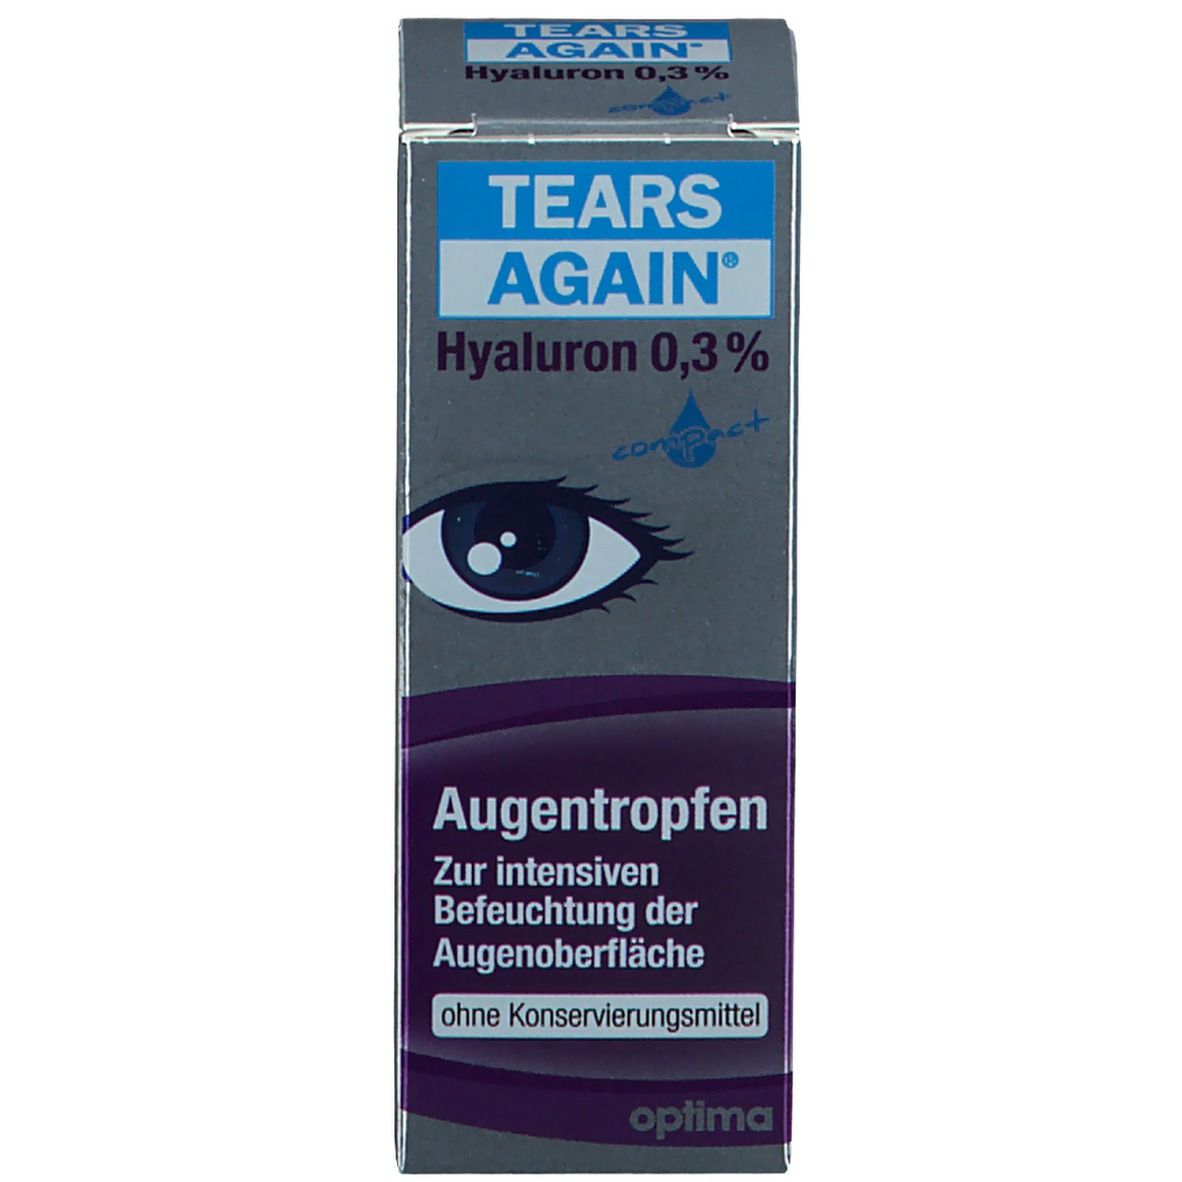 TEARS AGAIN Gel Augentropfen Hyaluron 0,3%